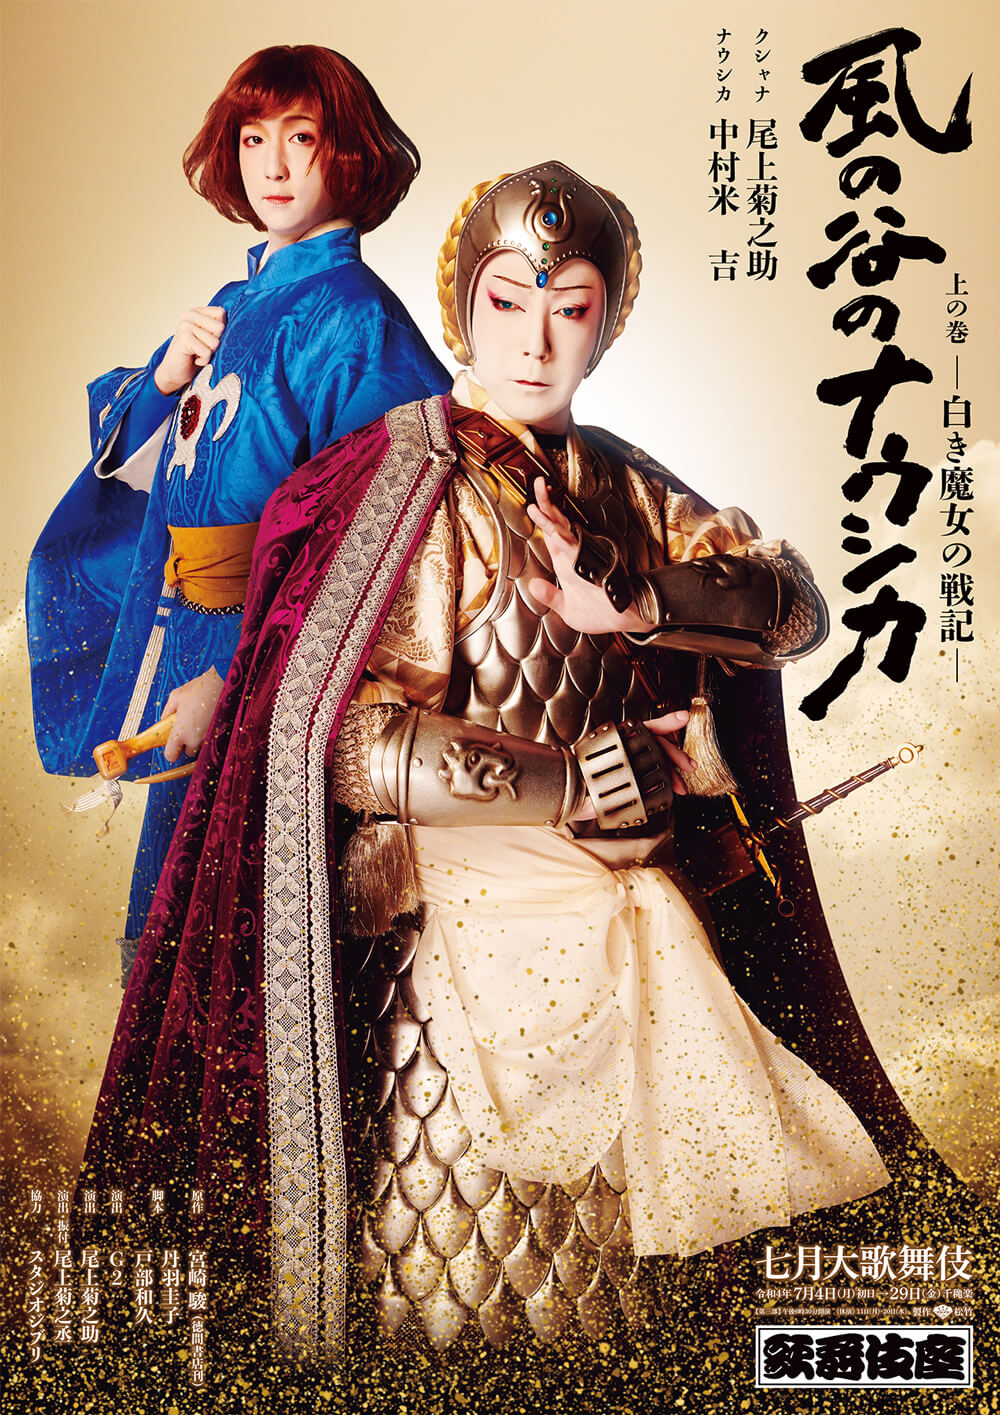 歌舞伎座『風の谷のナウシカ』特別ポスター公開